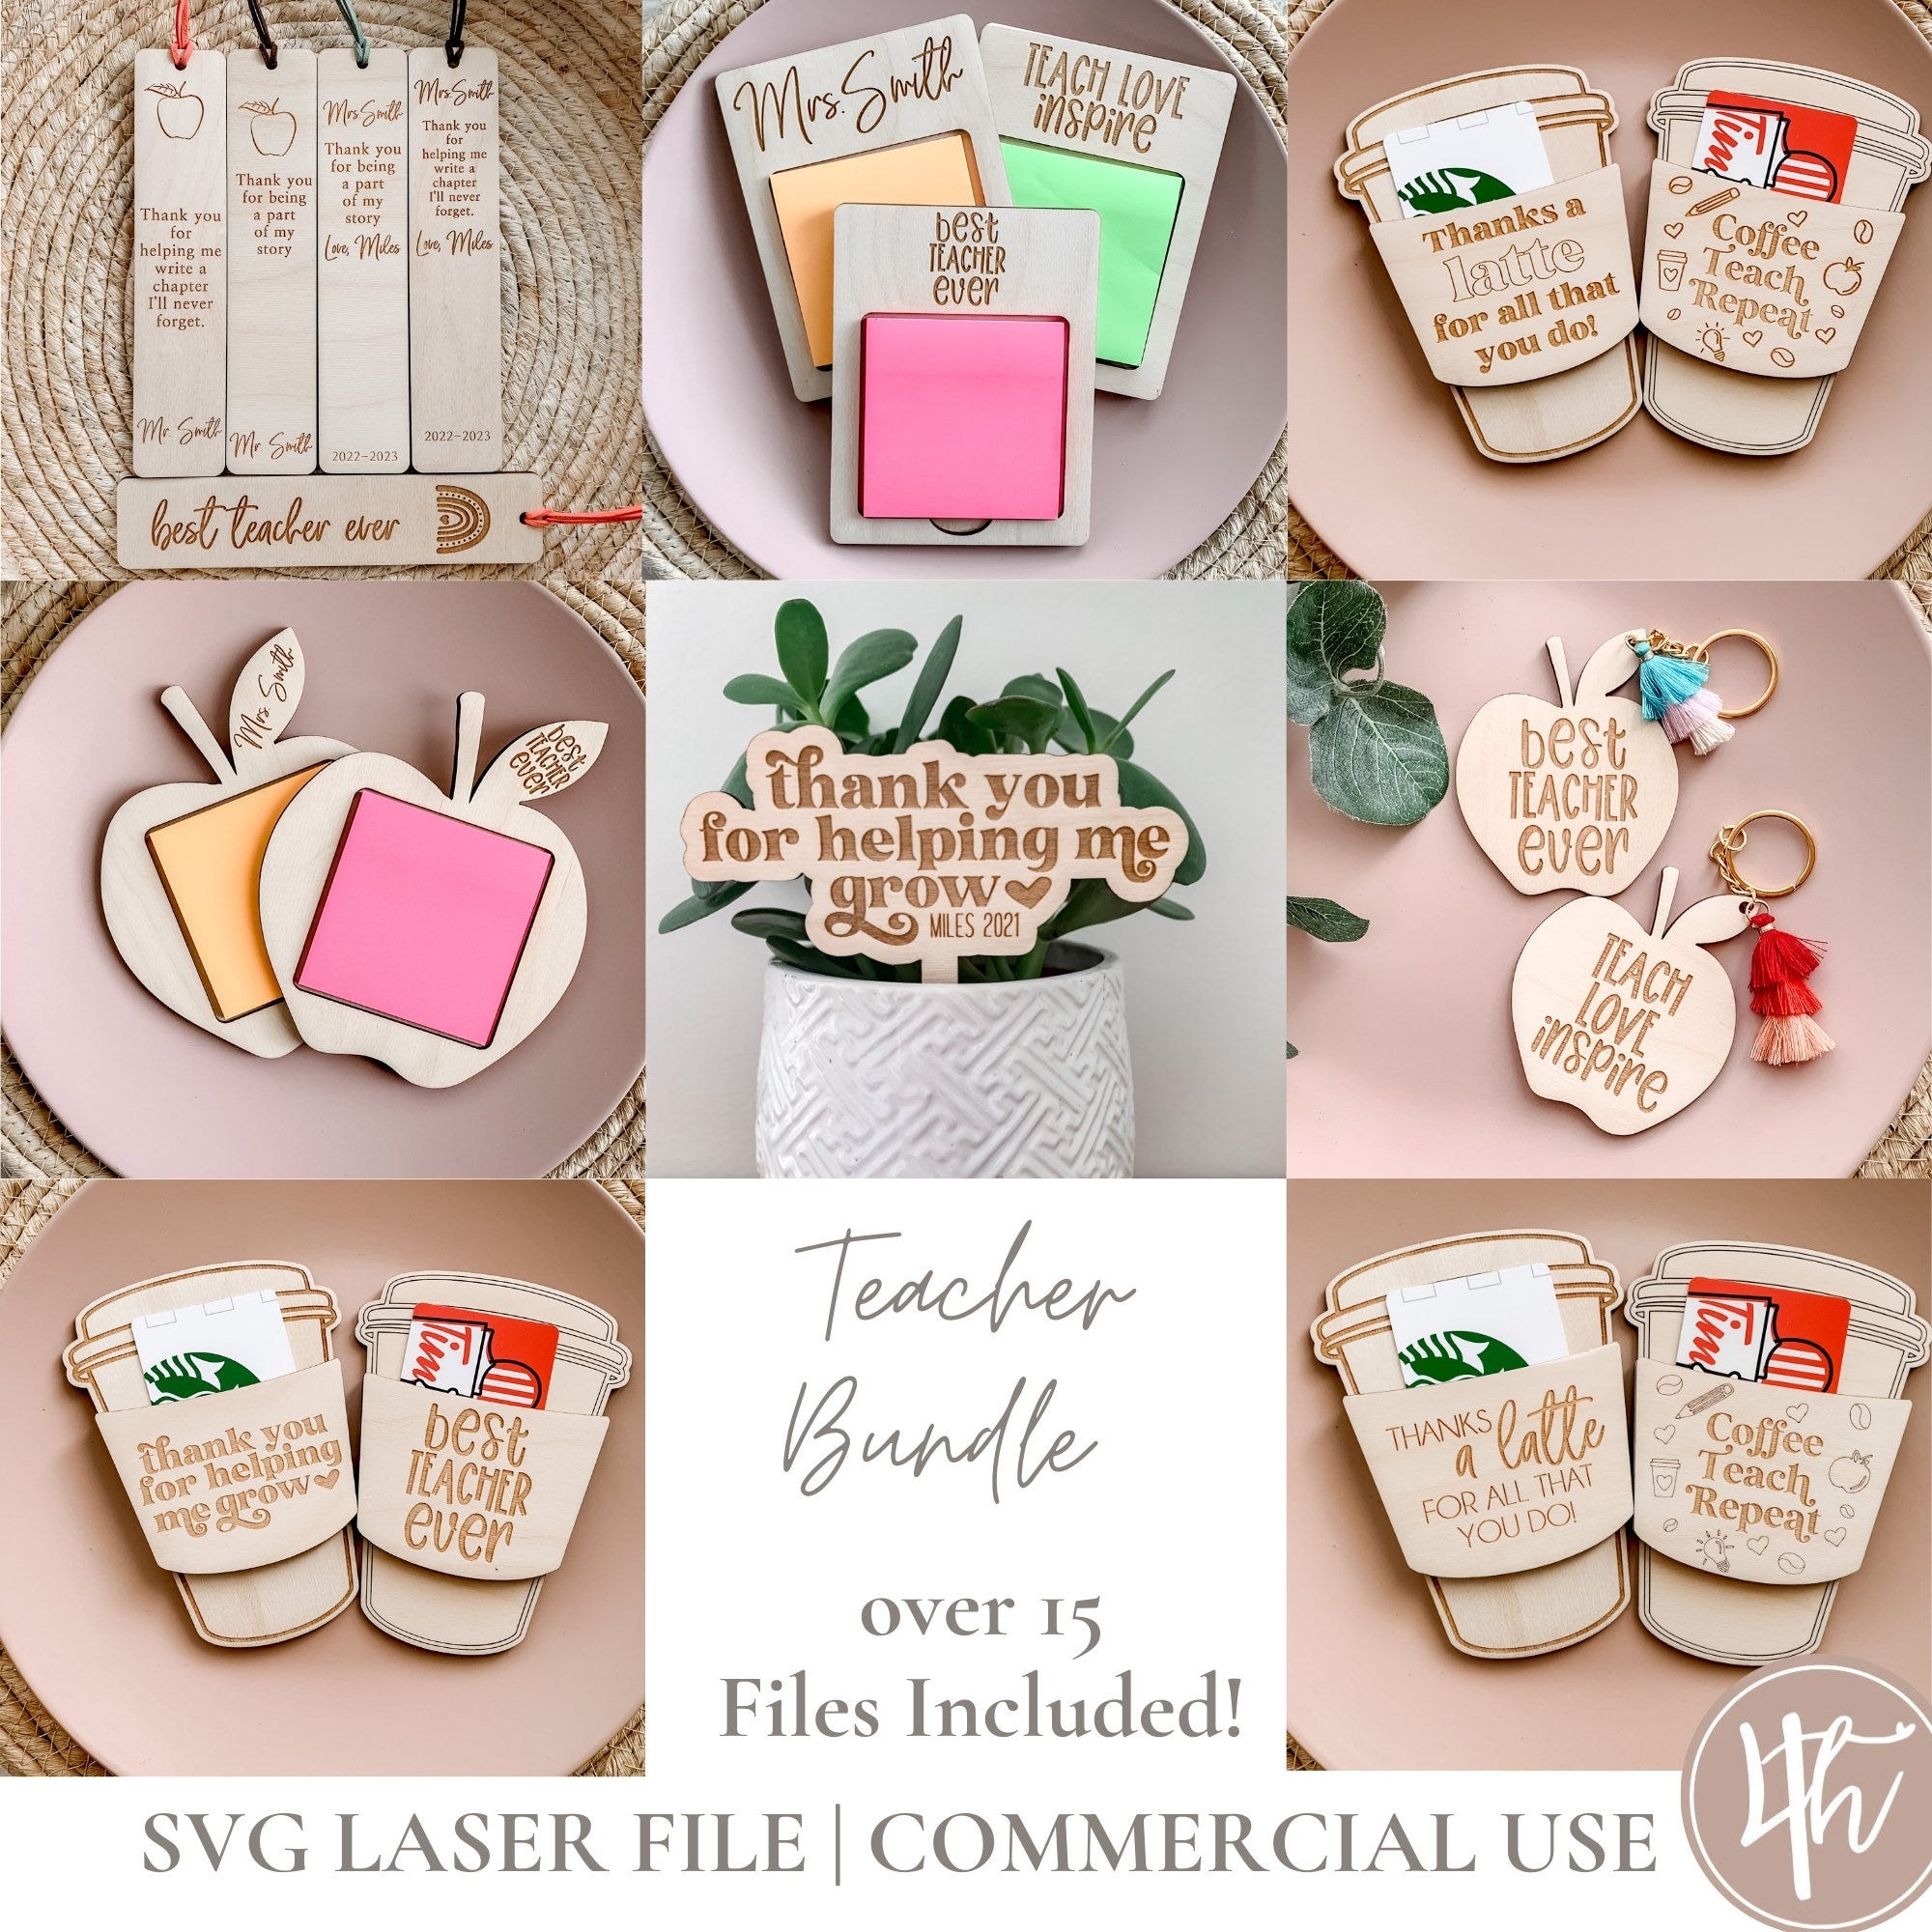 Teacher SVG Bundle 6 Products and 20 Total Designs| Teacher Gift SVG | Daycare worker svg | Laser Engrave Files | Glowforge SVG| Download